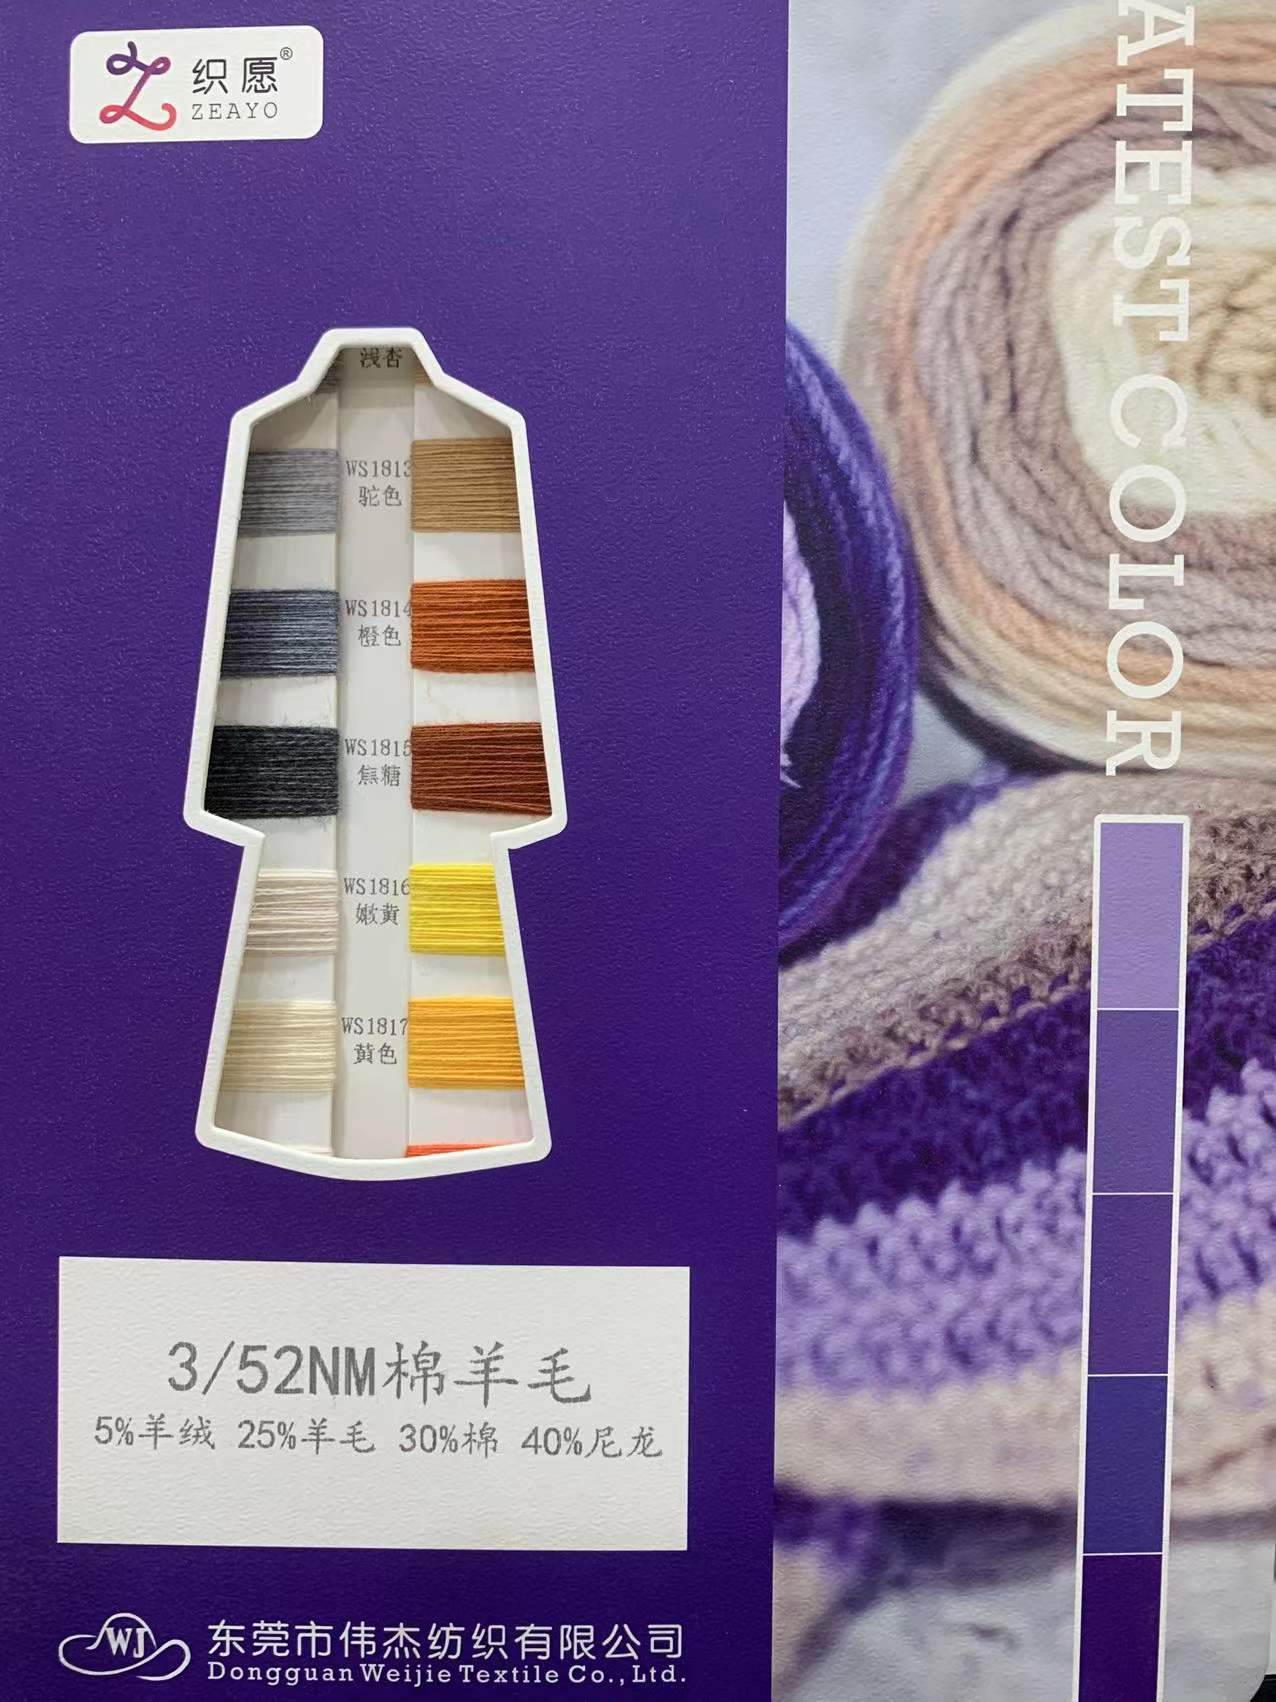 3/52NM棉羊毛